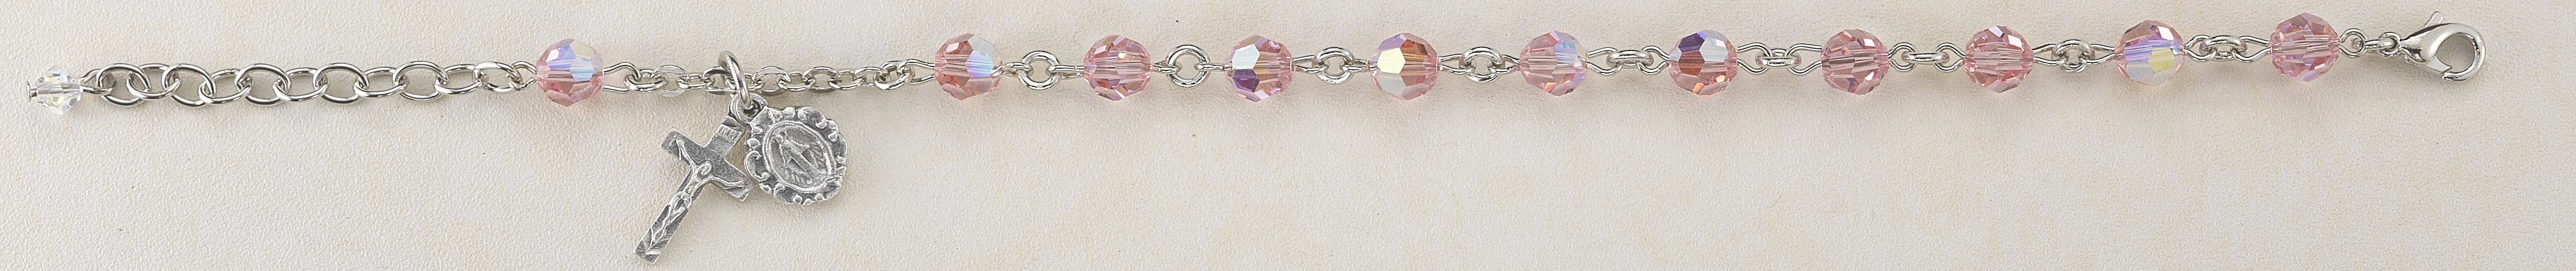 6mm Light Rose Swarovksi Crystal Rosary Bracelet